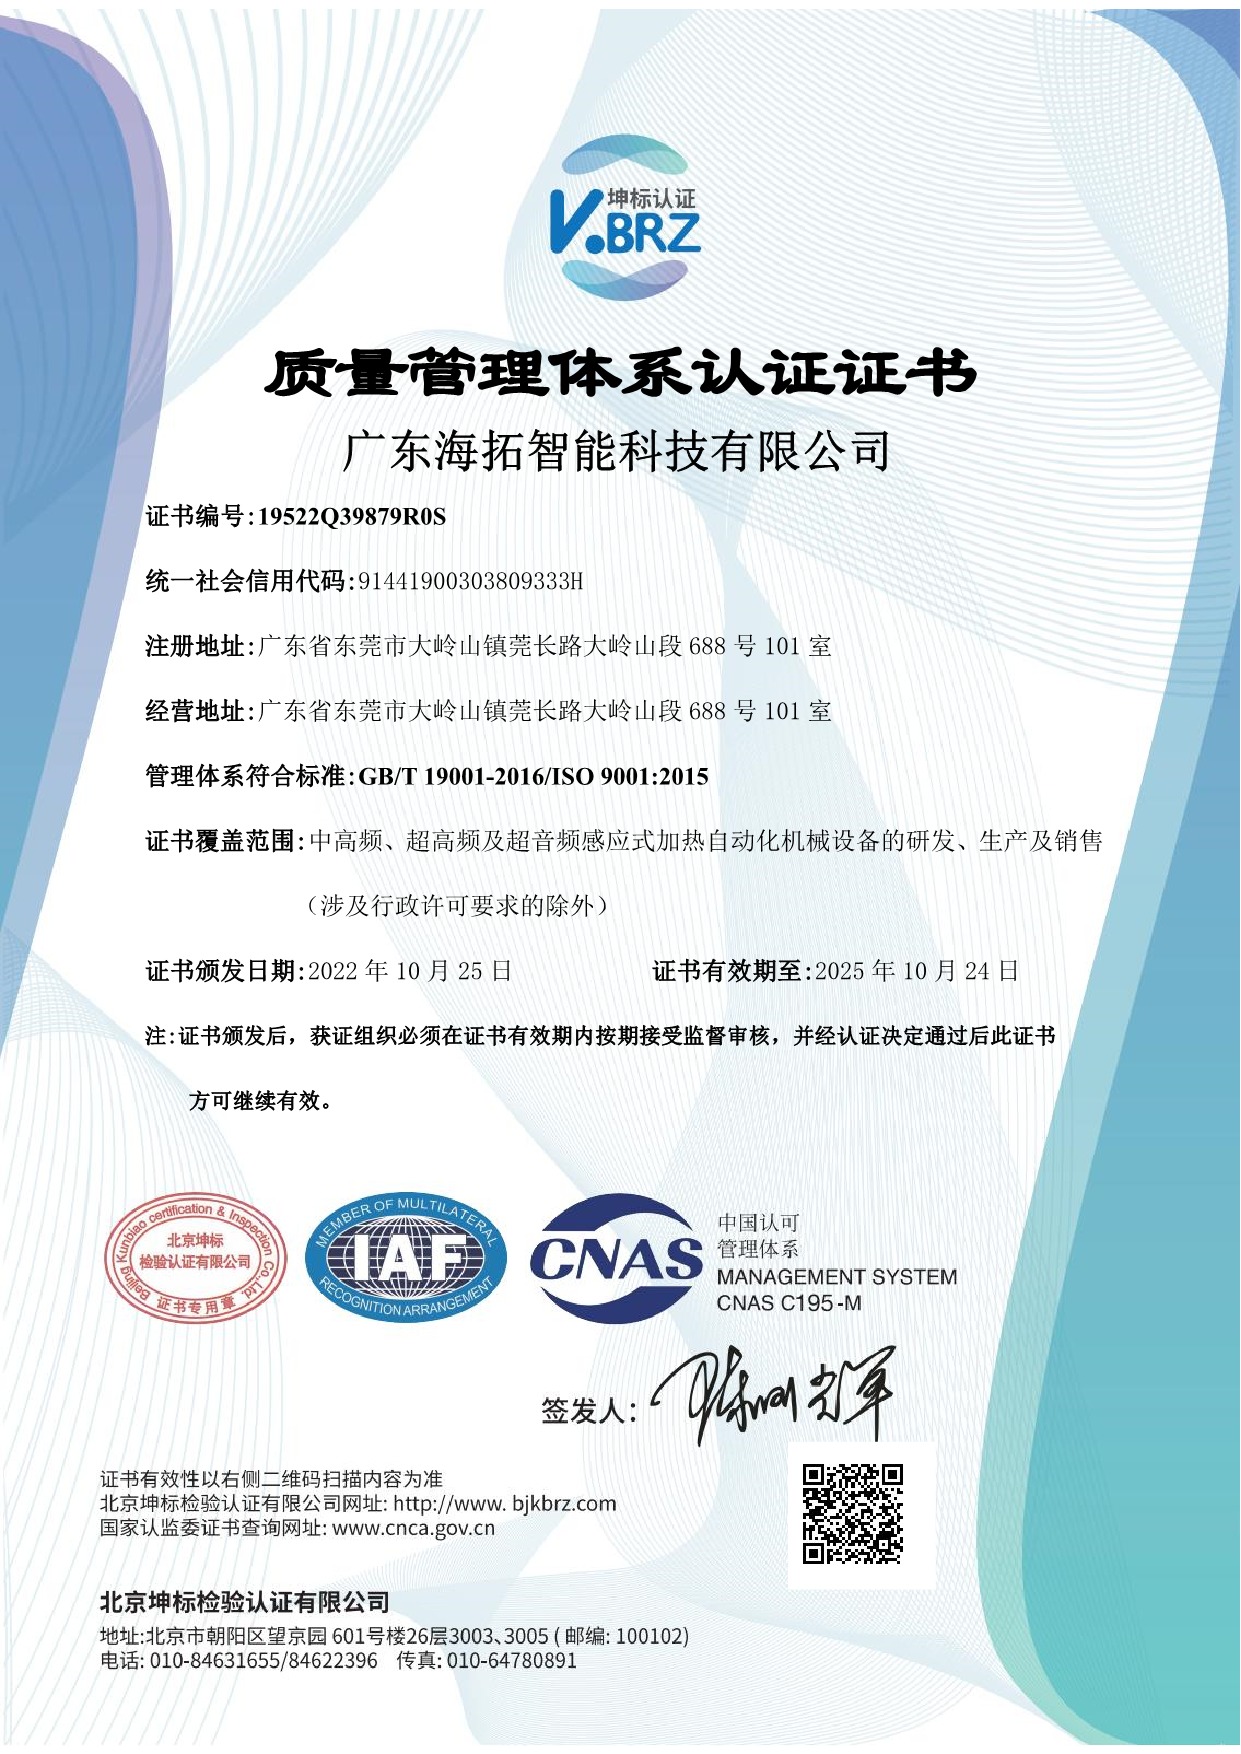 澳门新萄京59533com智能科技有限企业Q IAF中文证书（质量）.jpeg